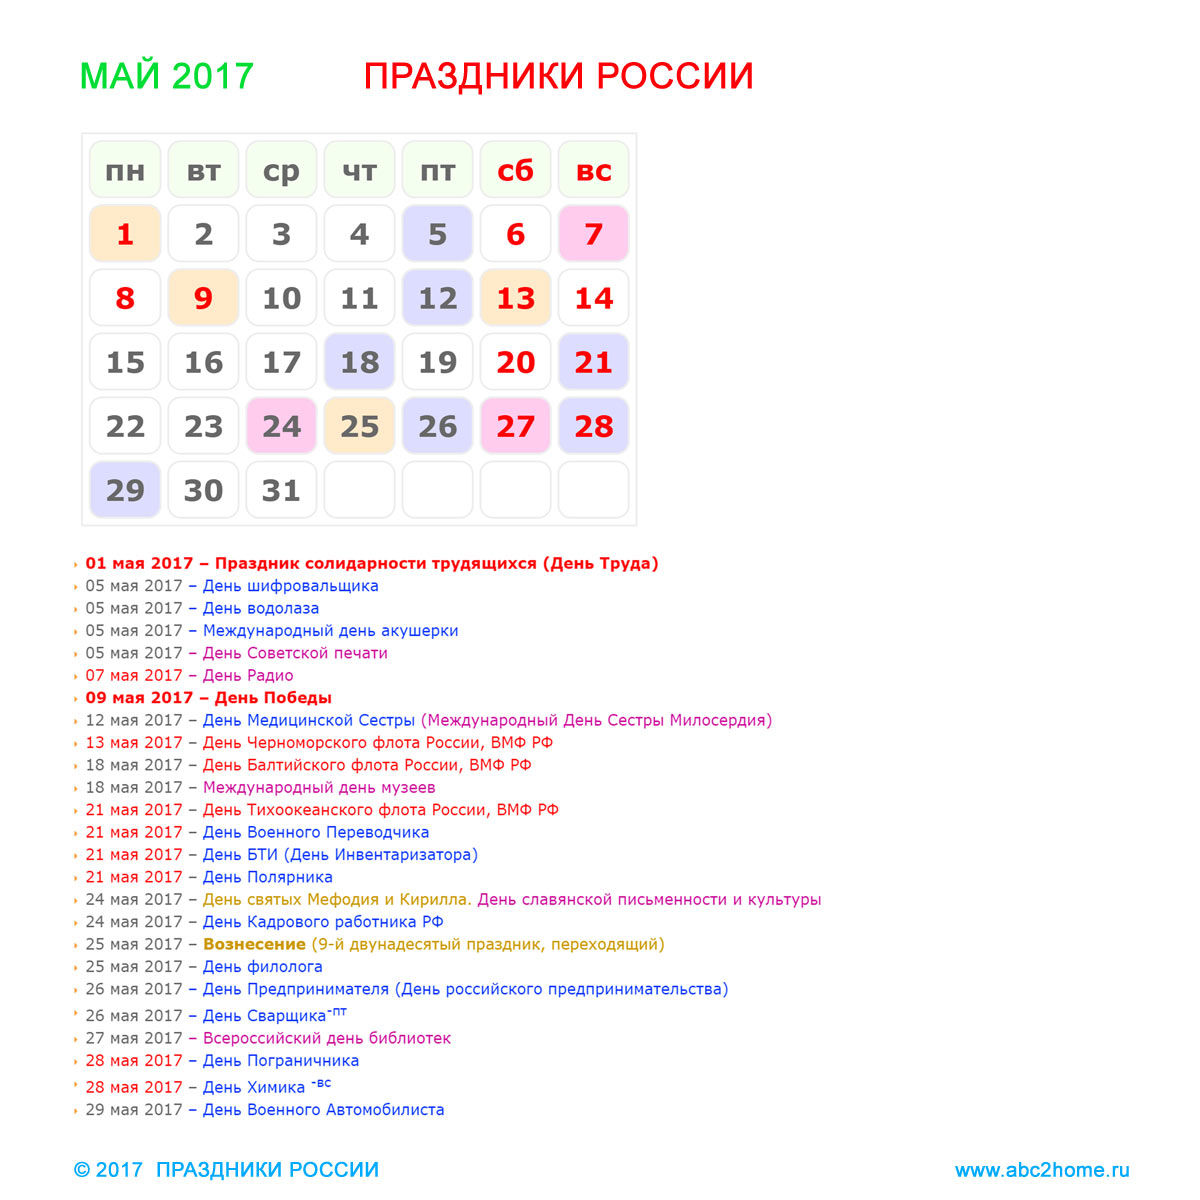 prazdniki_rossii_may_2017.jpg